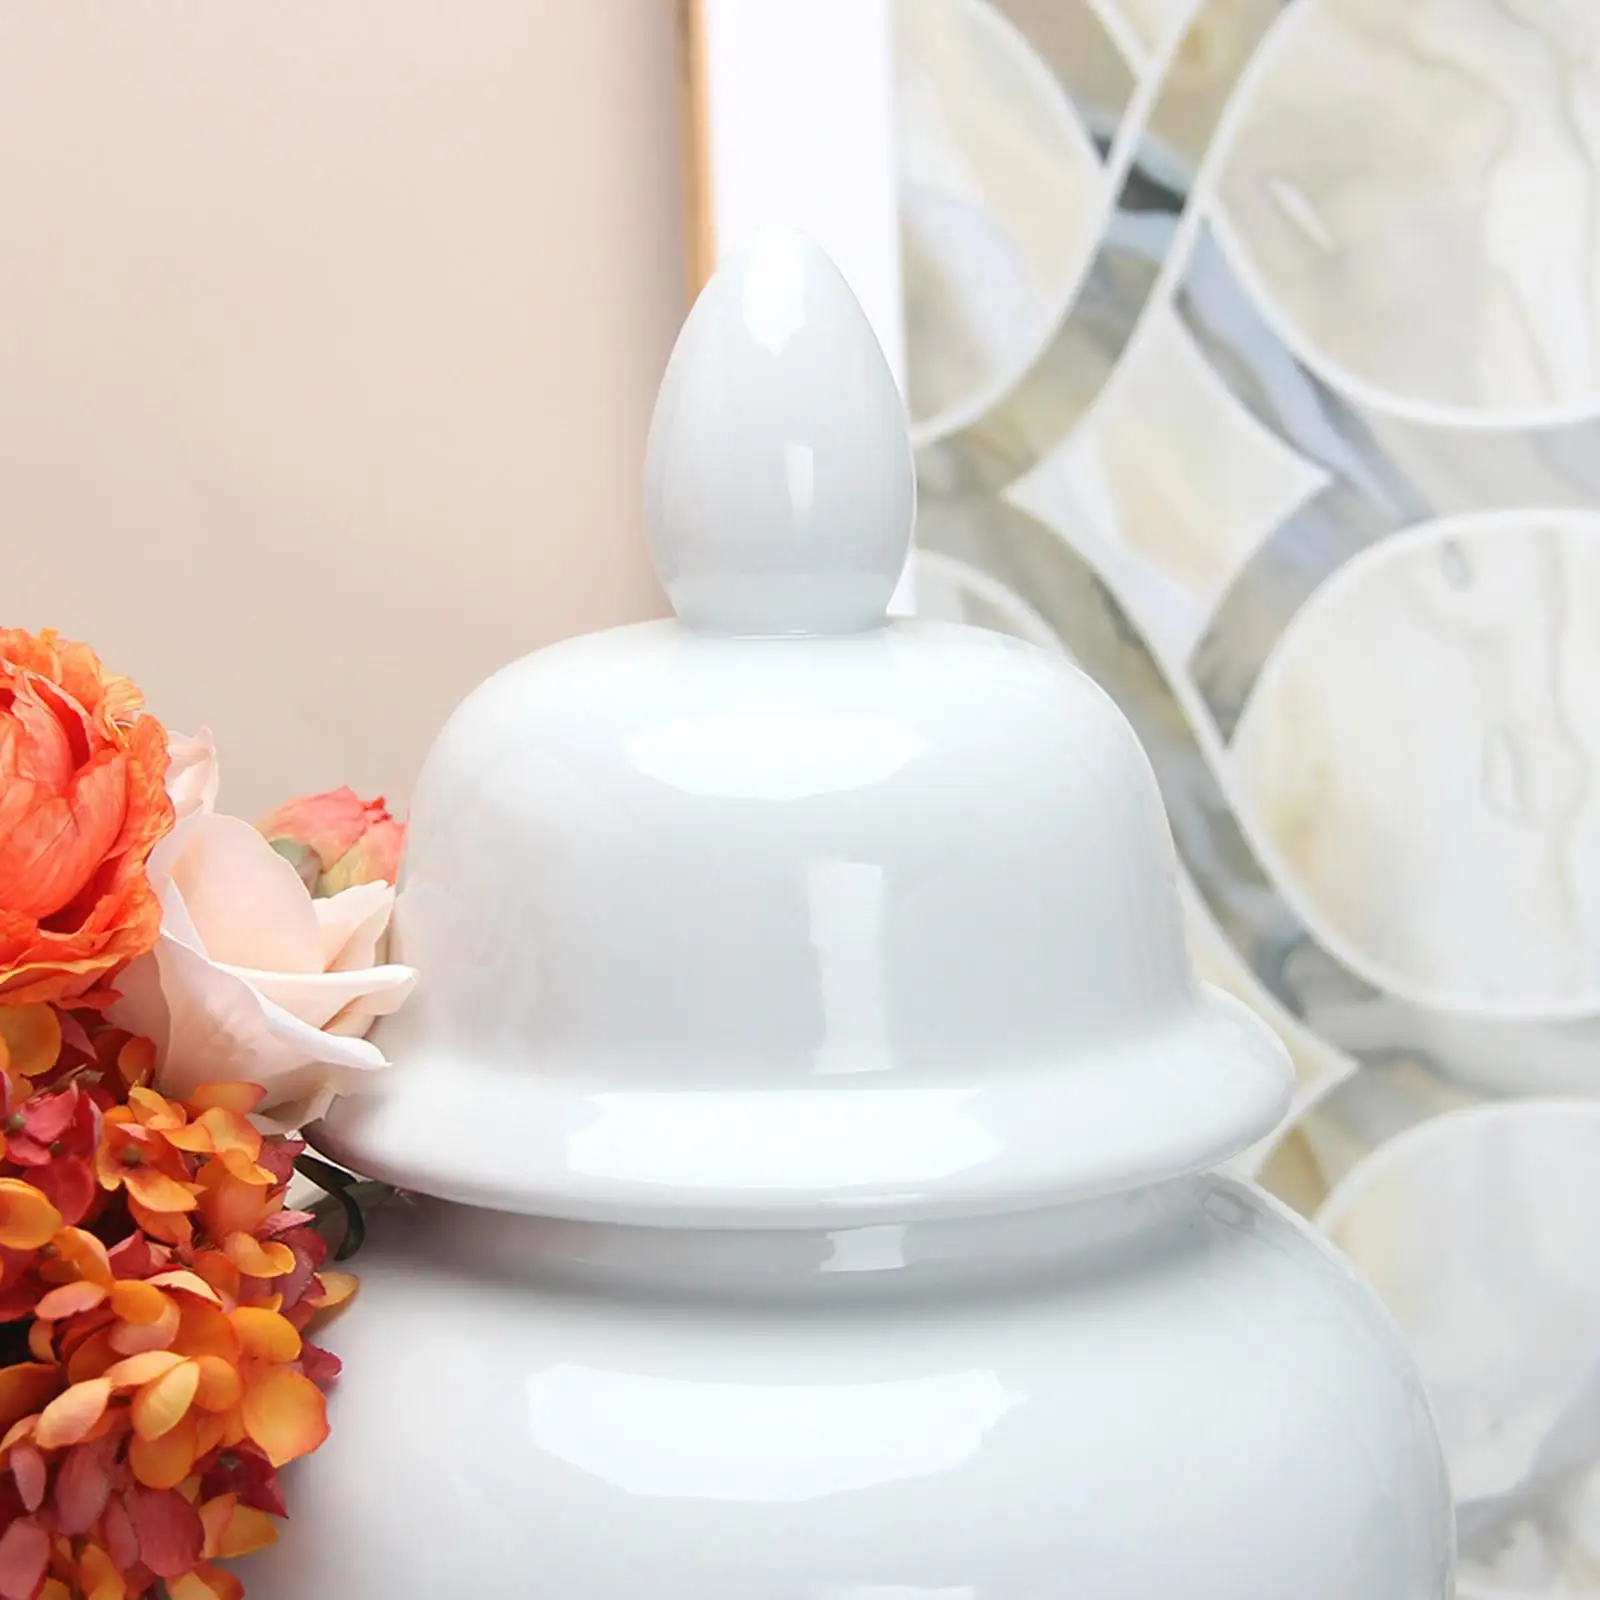 

Традиционная Керамическая банка имбиря ваза для цветов универсальная с крышкой банка для хранения ручной работы для спальни офиса свадебн...